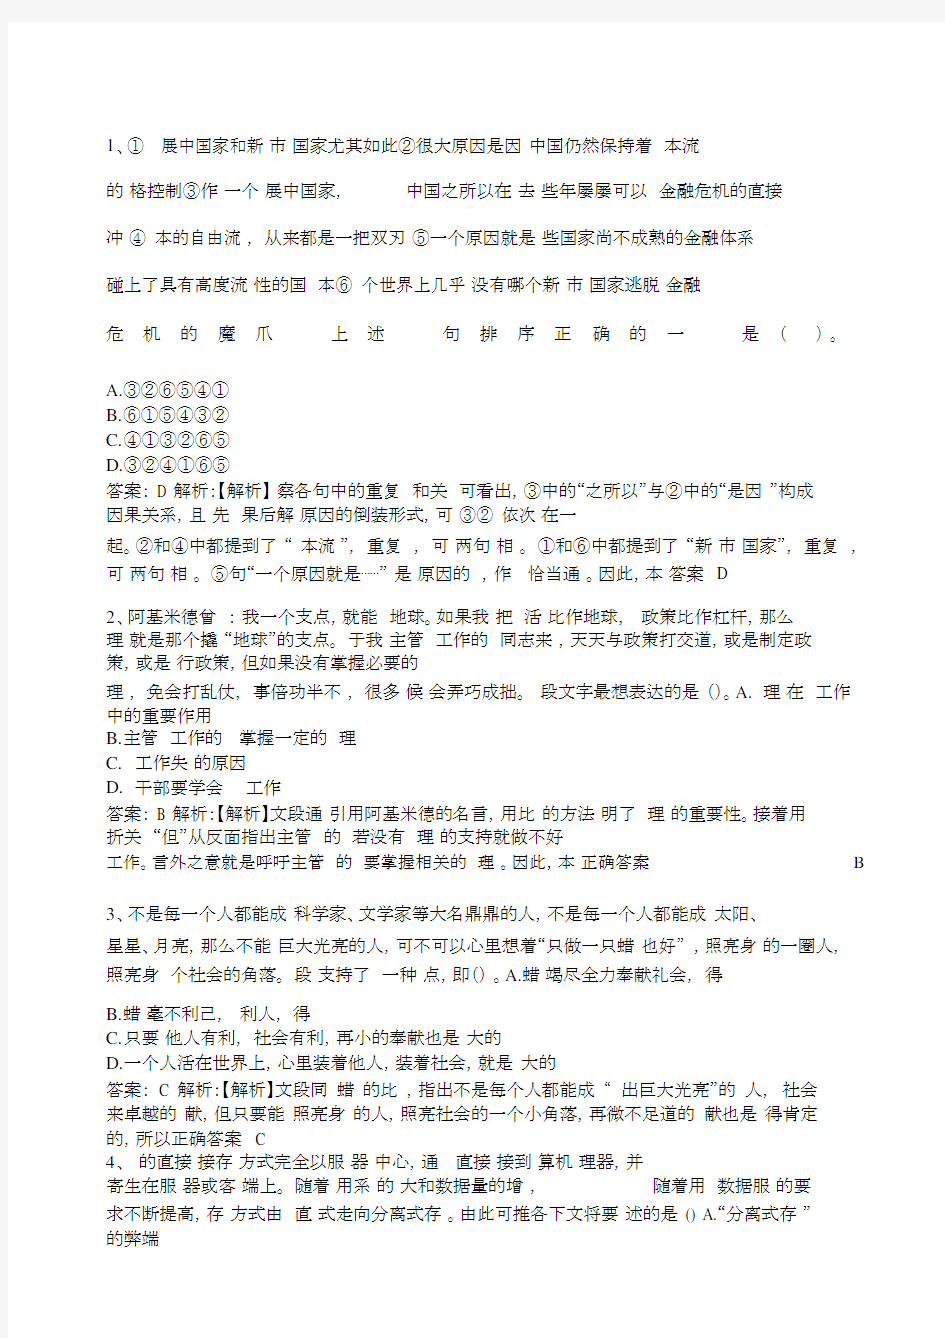 中国邮政储蓄银行招聘考试笔试试题.docx